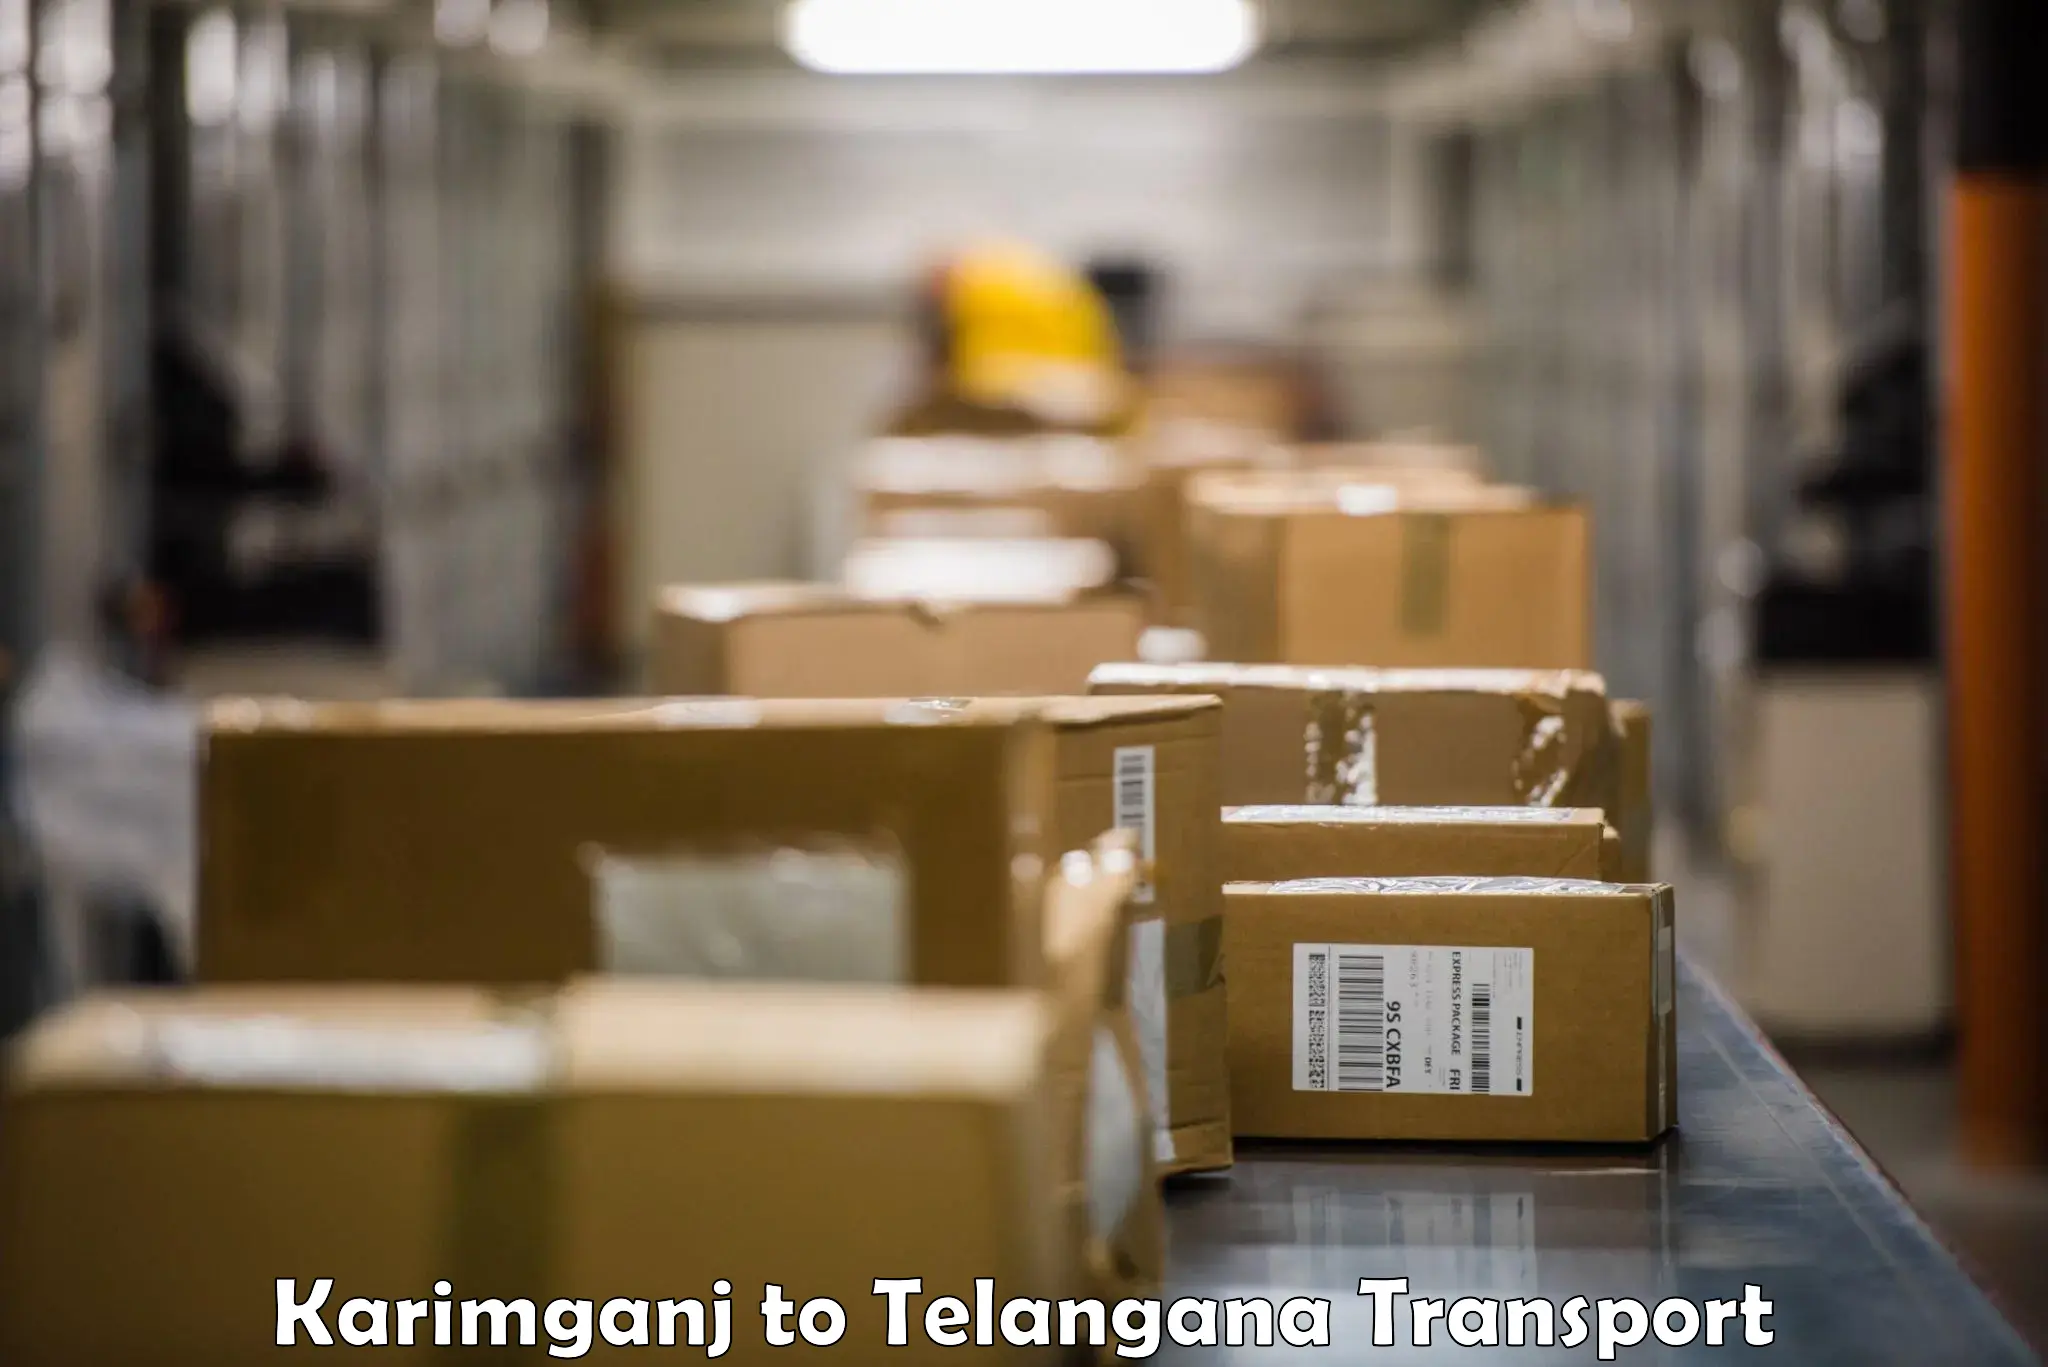 Daily parcel service transport in Karimganj to Nirmal